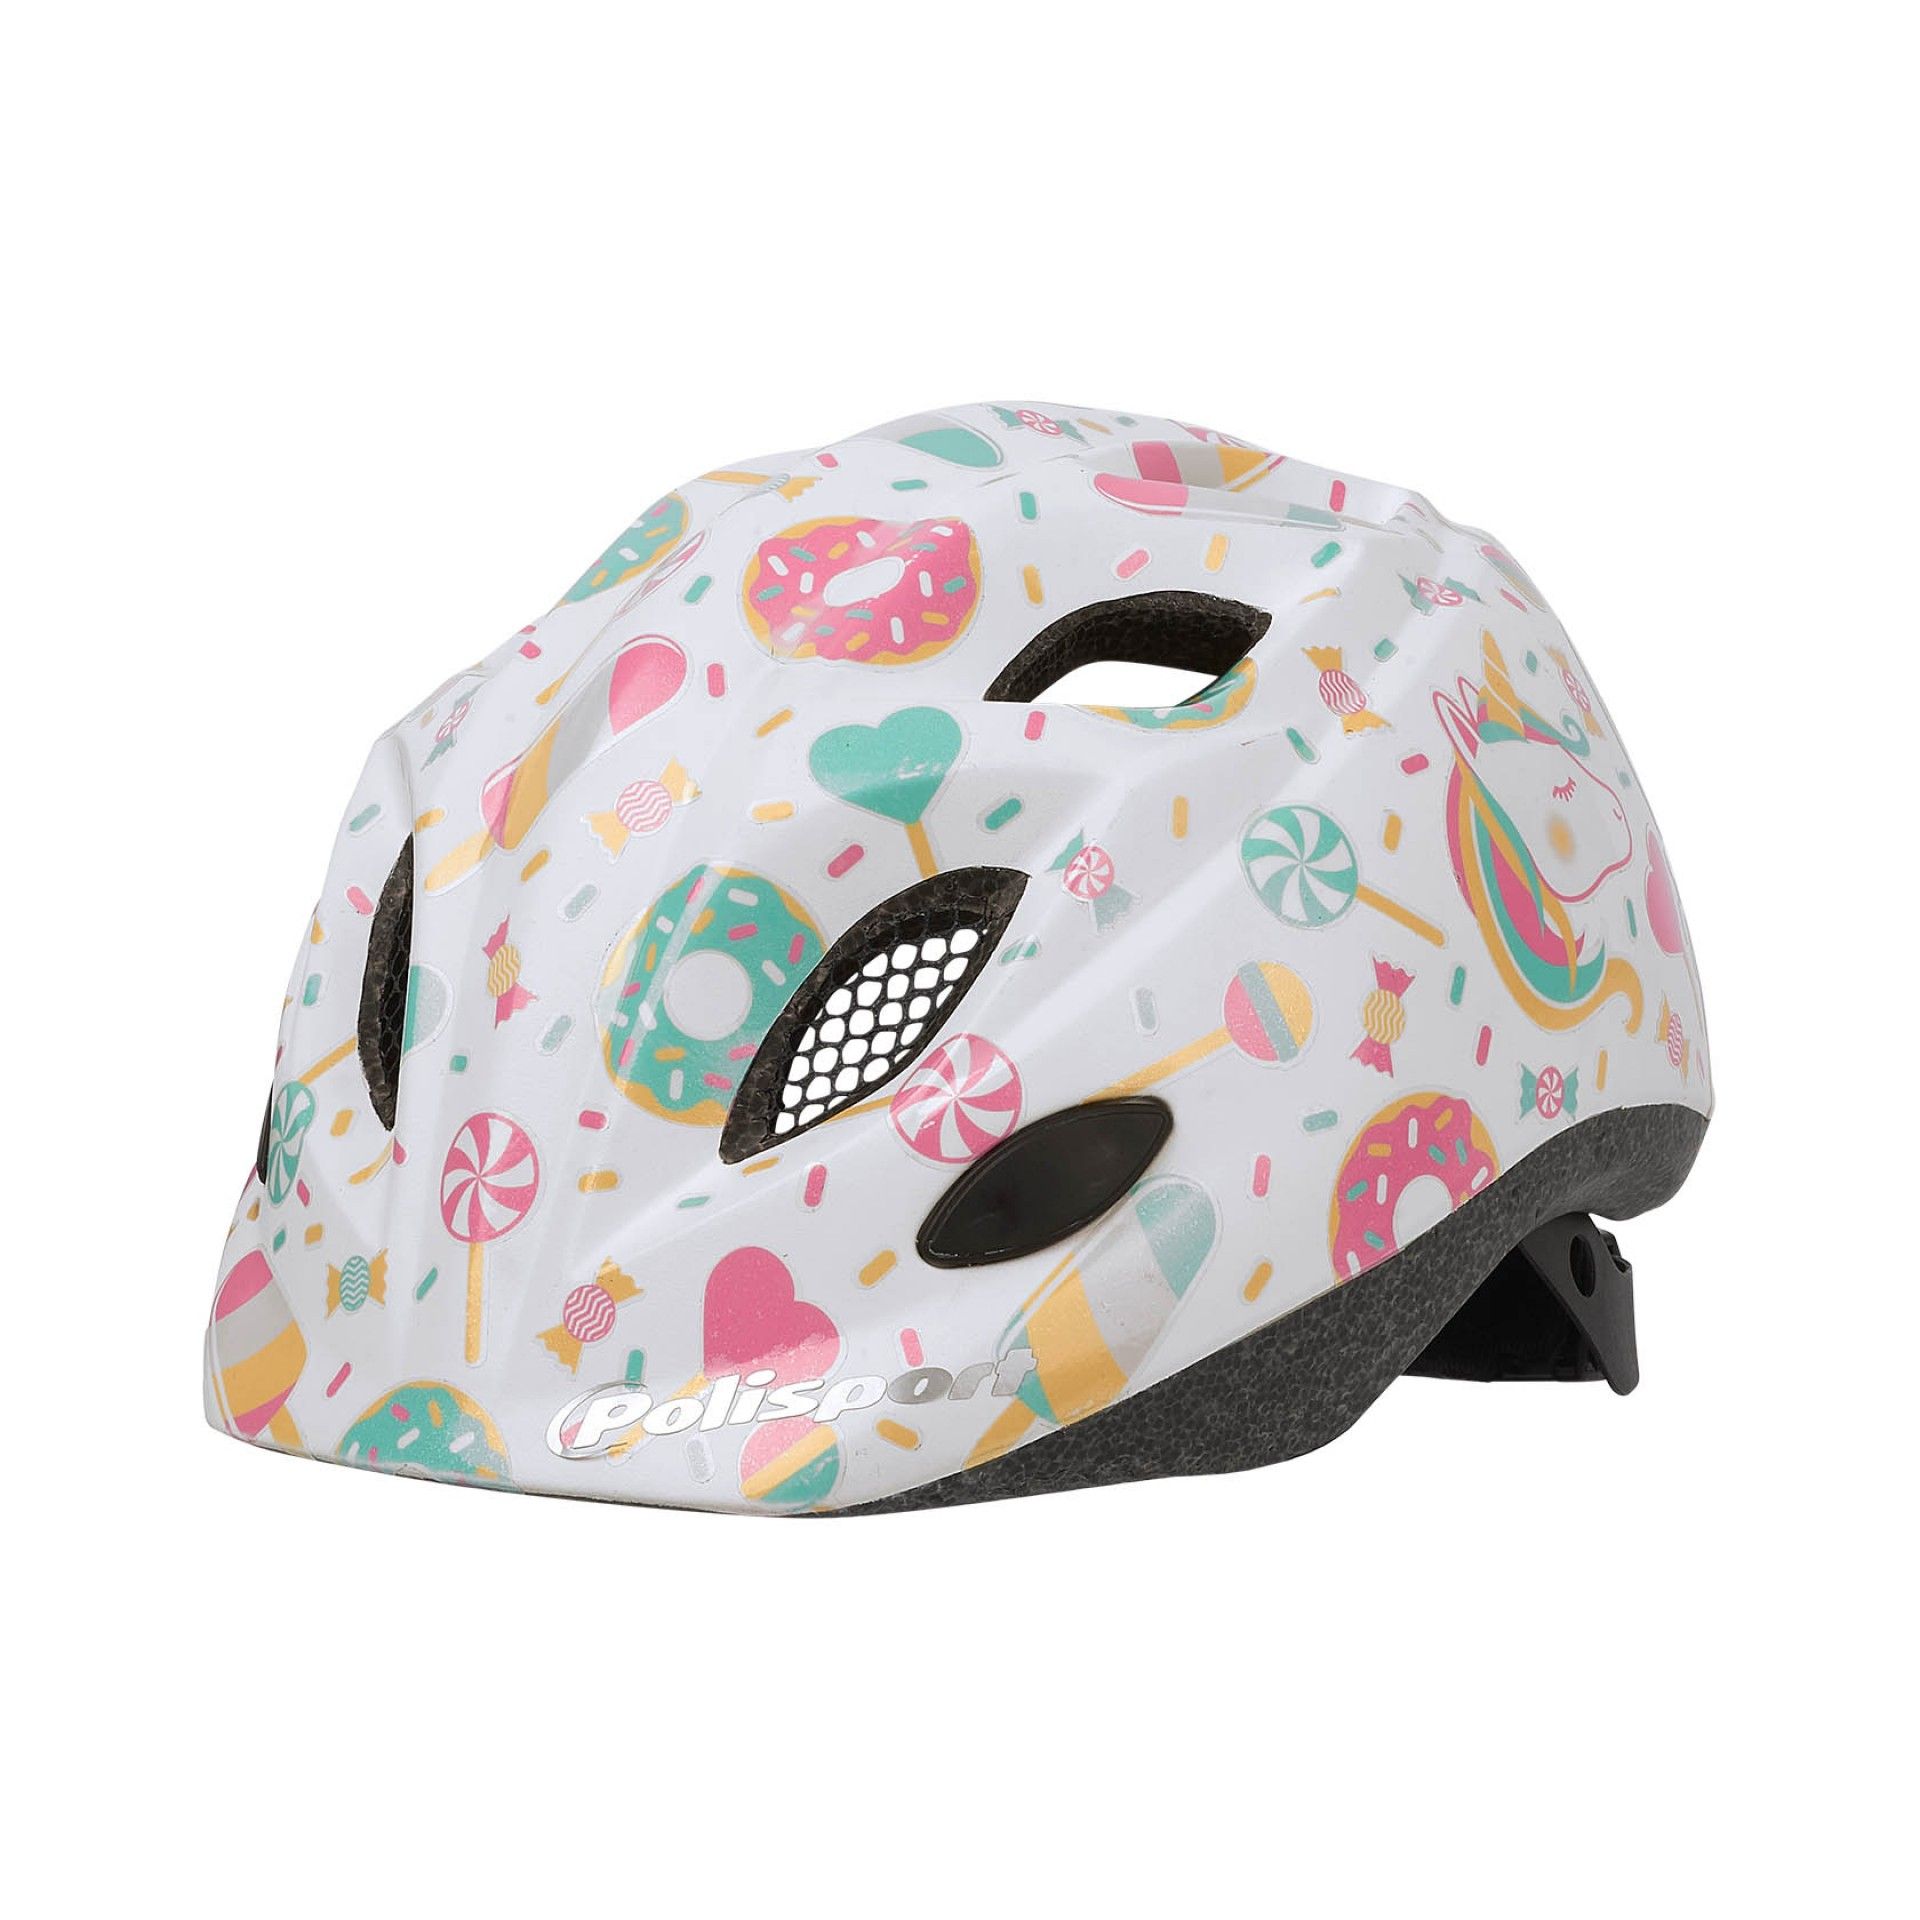 Комплект Polisport kids premium детский шлем/фляга/держатель Lolipops XS (48/52)